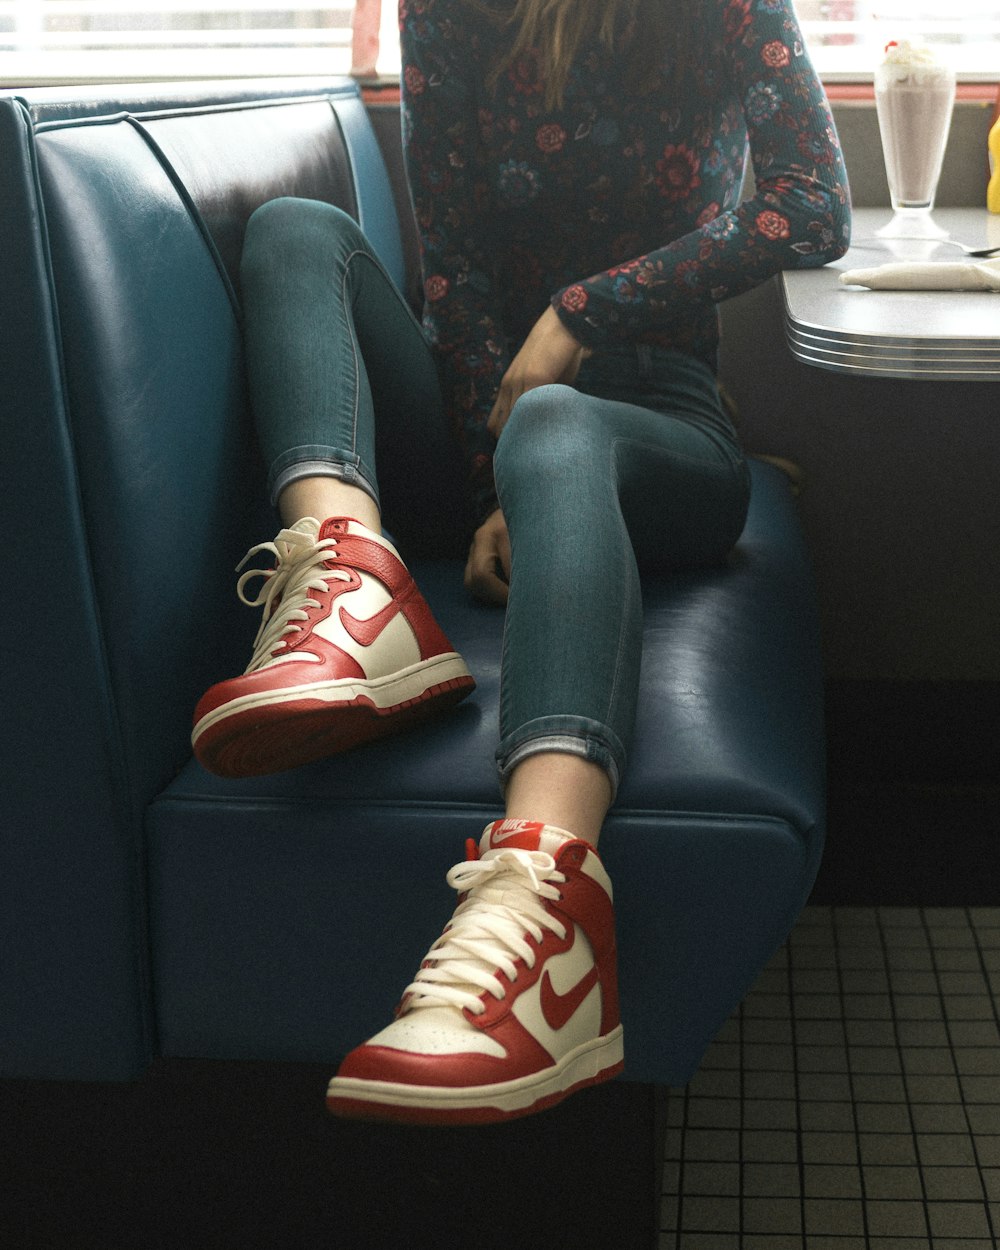 Obligatorio tuyo Compositor Foto Mujer con zapatillas nike rojas y blancas mientras está sentada en el  asiento – Imagen Ruta 66 gratis en Unsplash